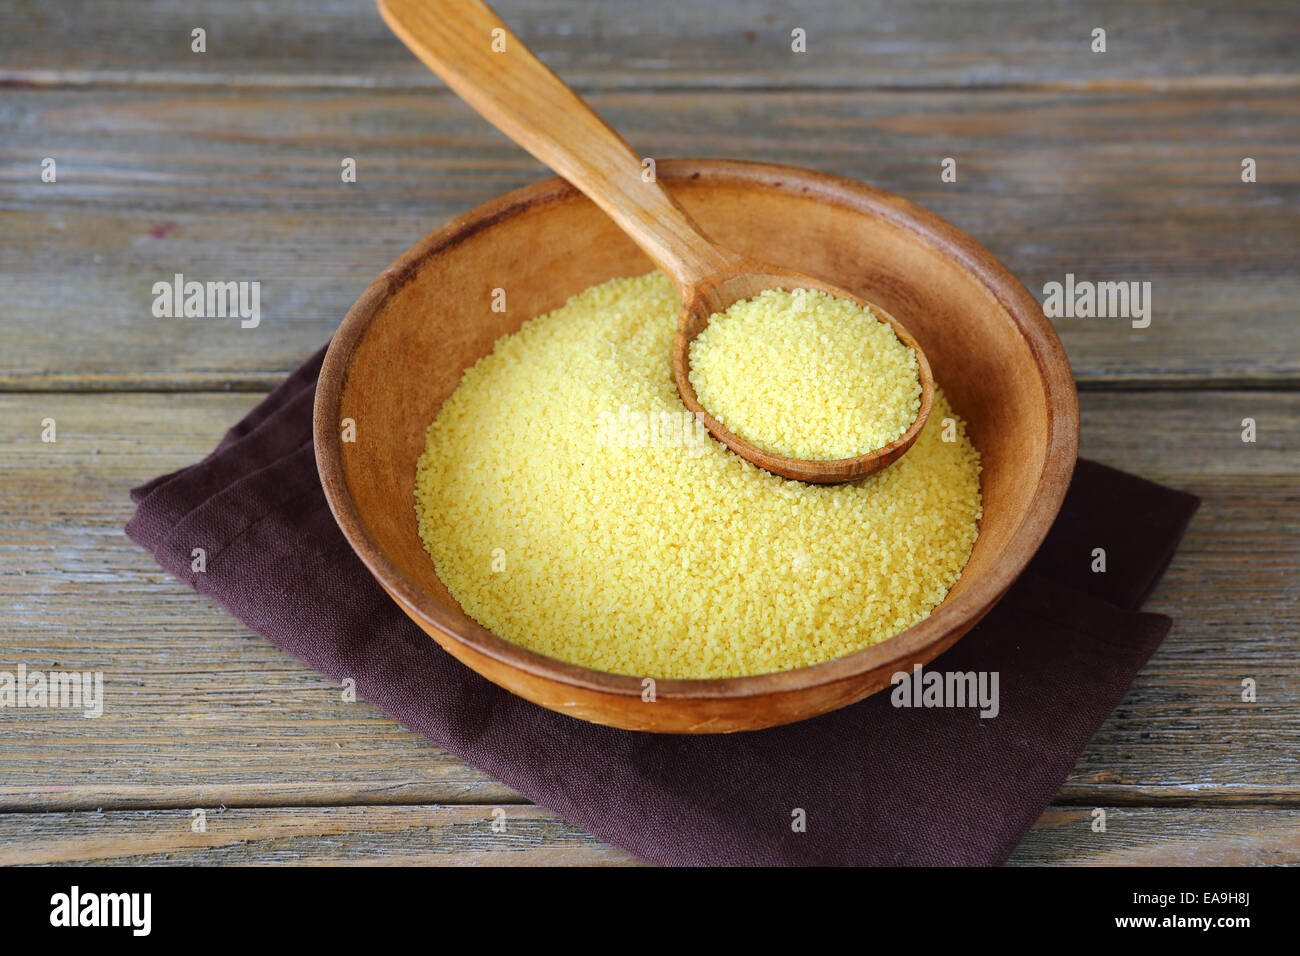 Couscous arabe dans un bol sur les planches de bois, de l'ingrédient alimentaire Banque D'Images